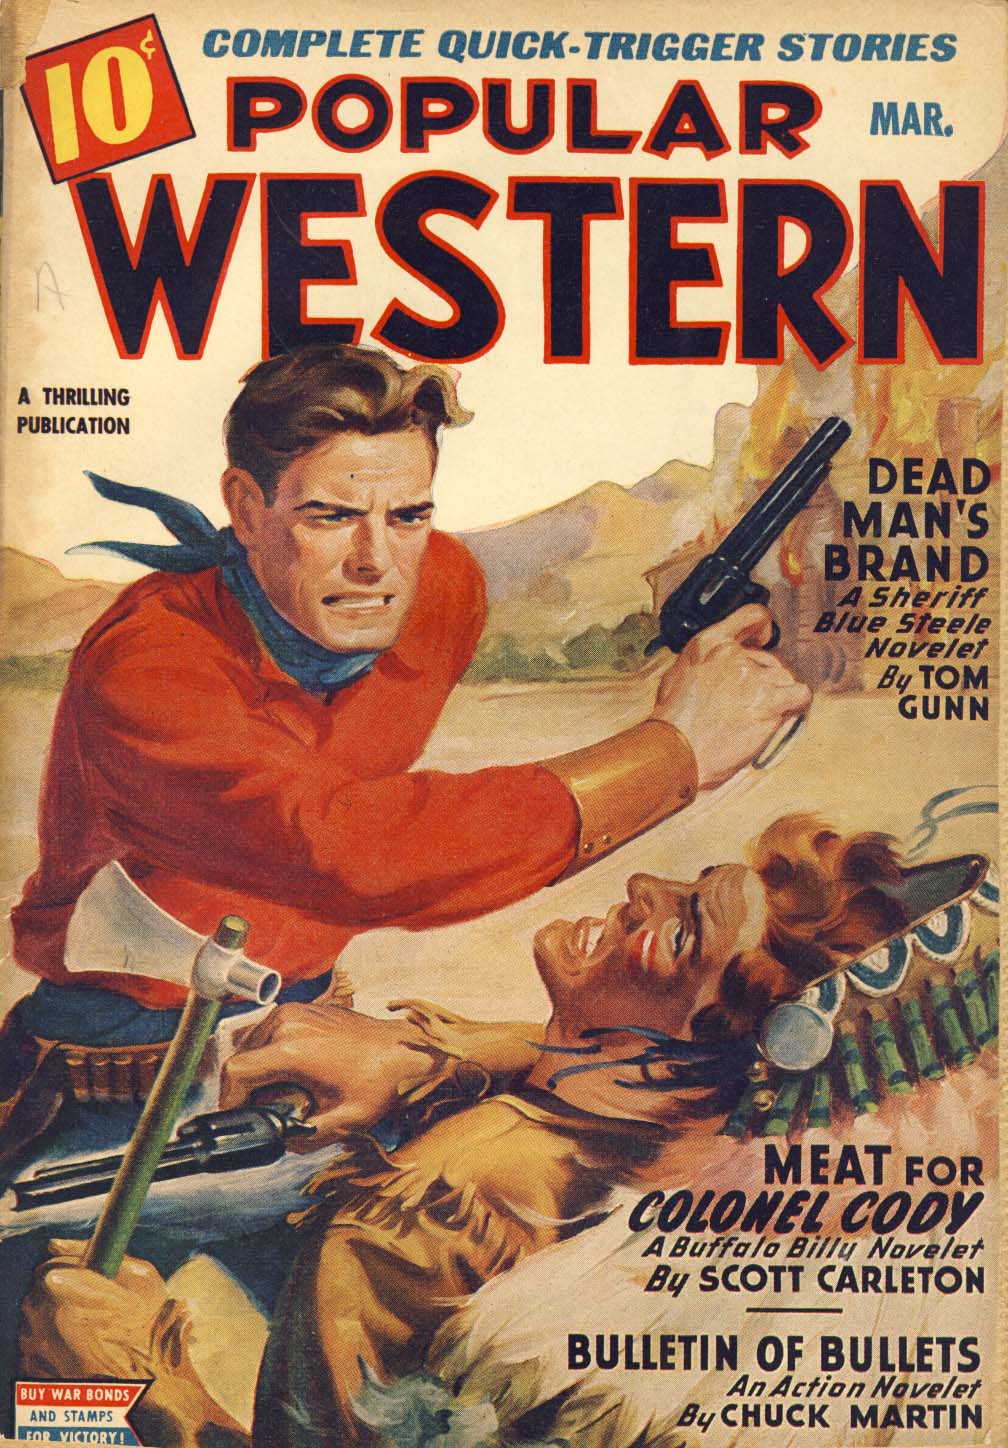 Popular Western, v.28, n.2, Mar. 1945 cover